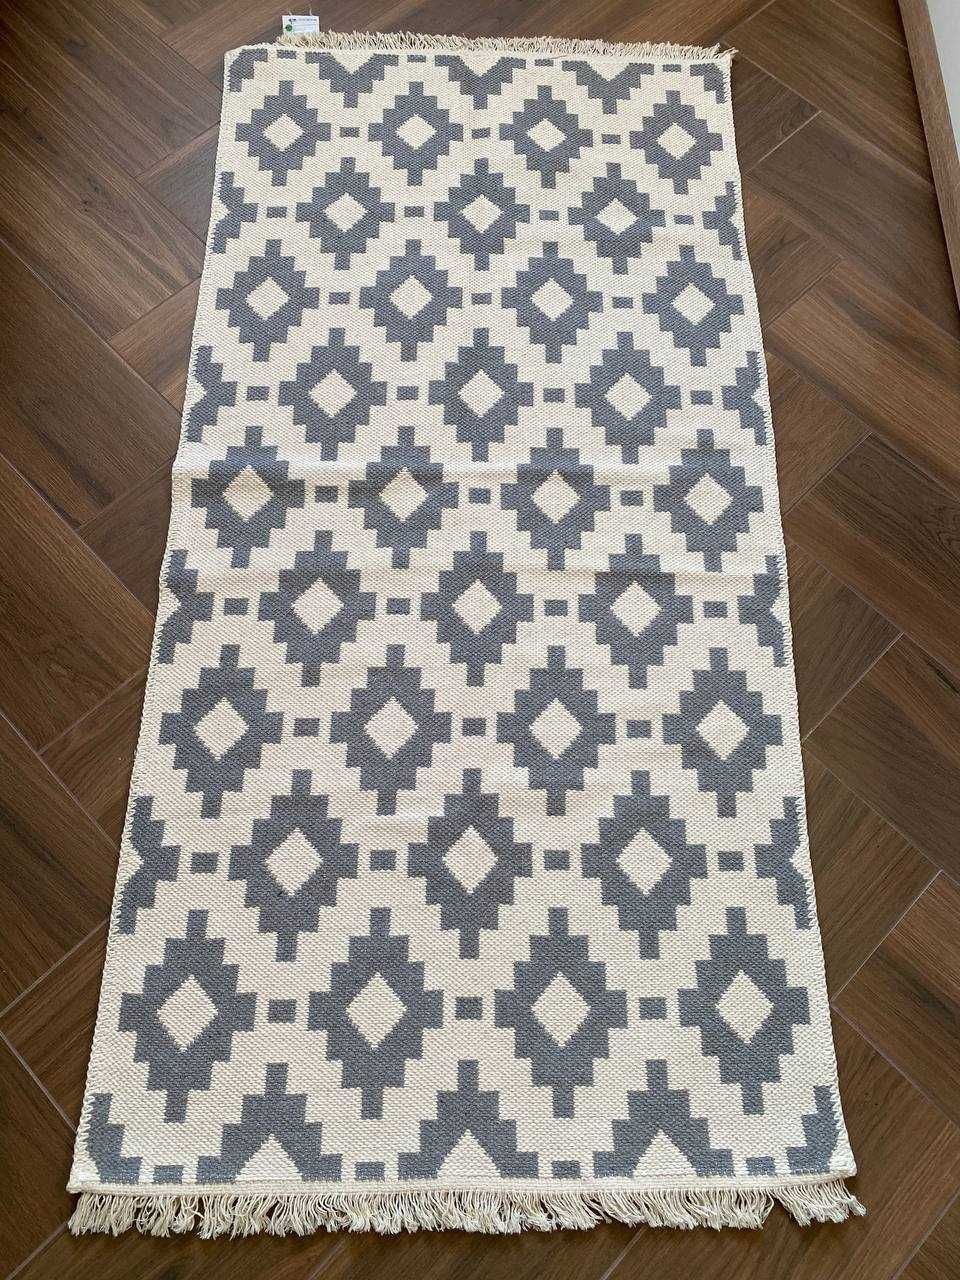 Невеликий килим, плотний ковер, безворсовий двосторонній коврик